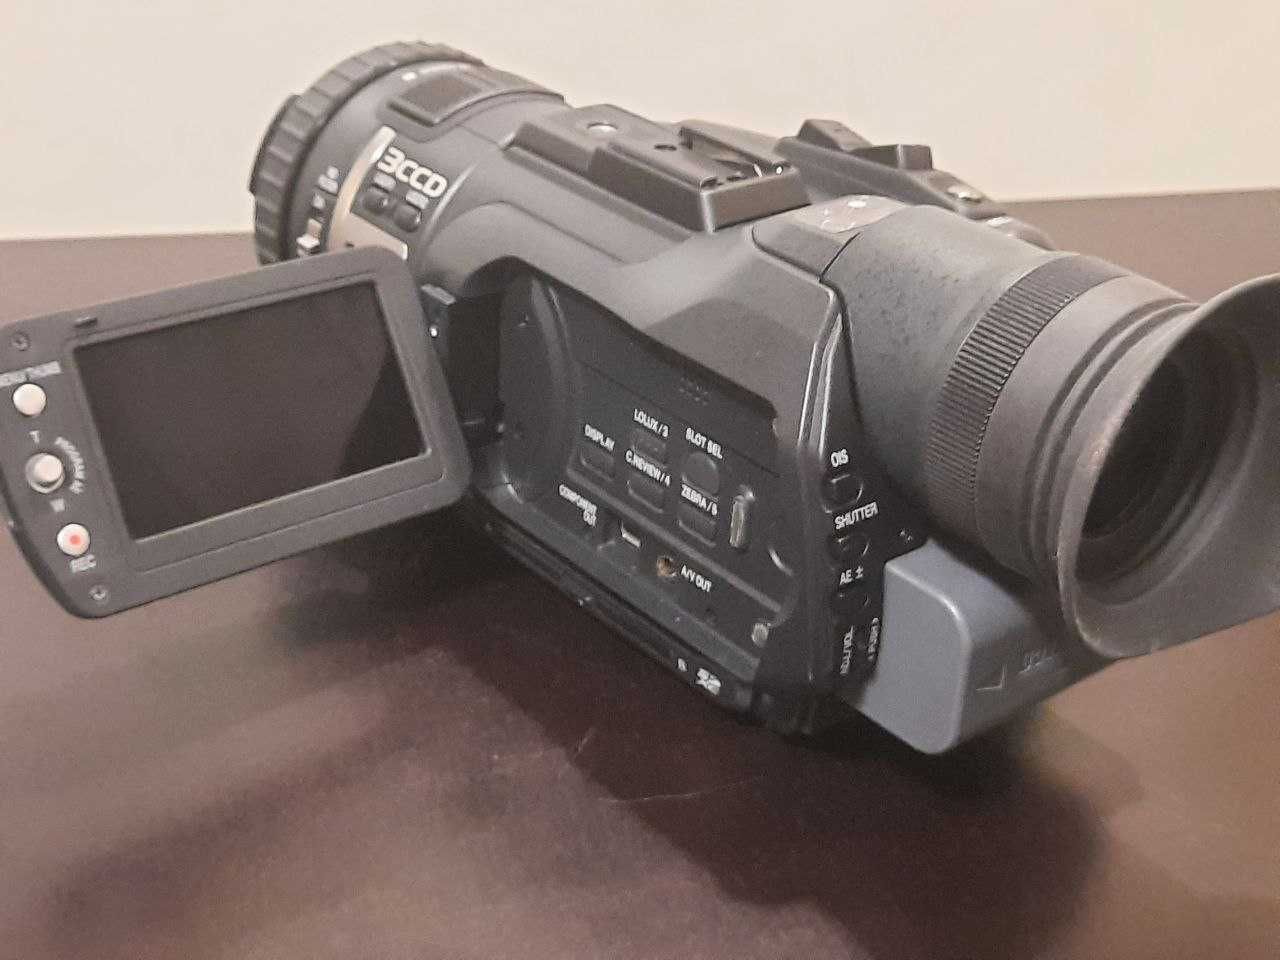 JVC GY-HM150E Видеокамера, камкордер (HD memory recorder)